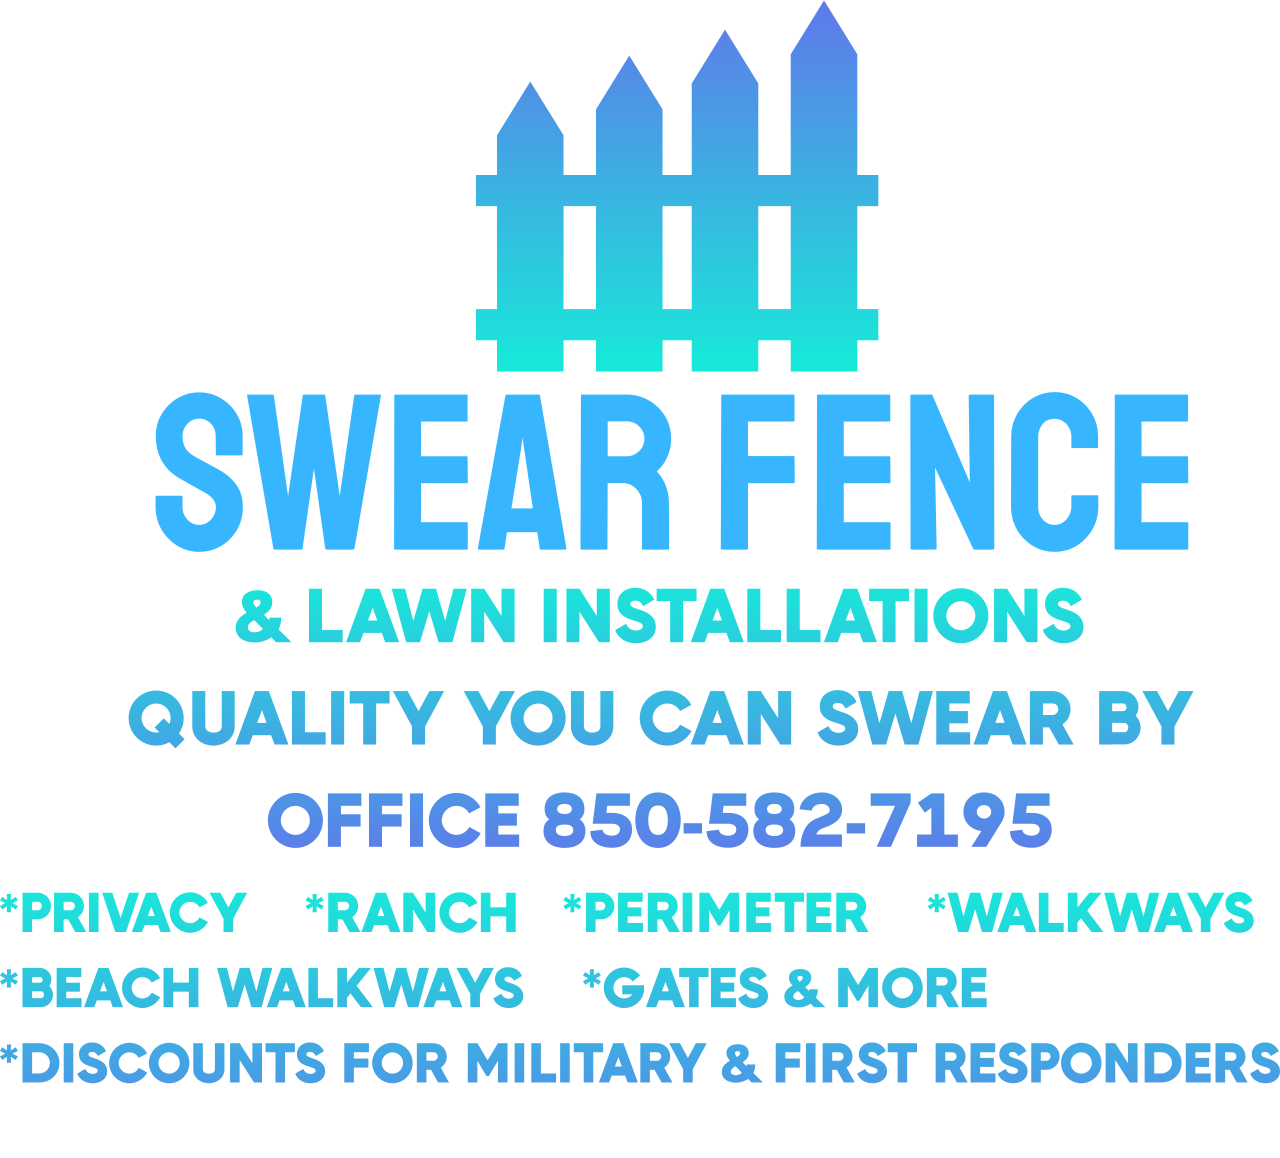 Swear Fence 's web page